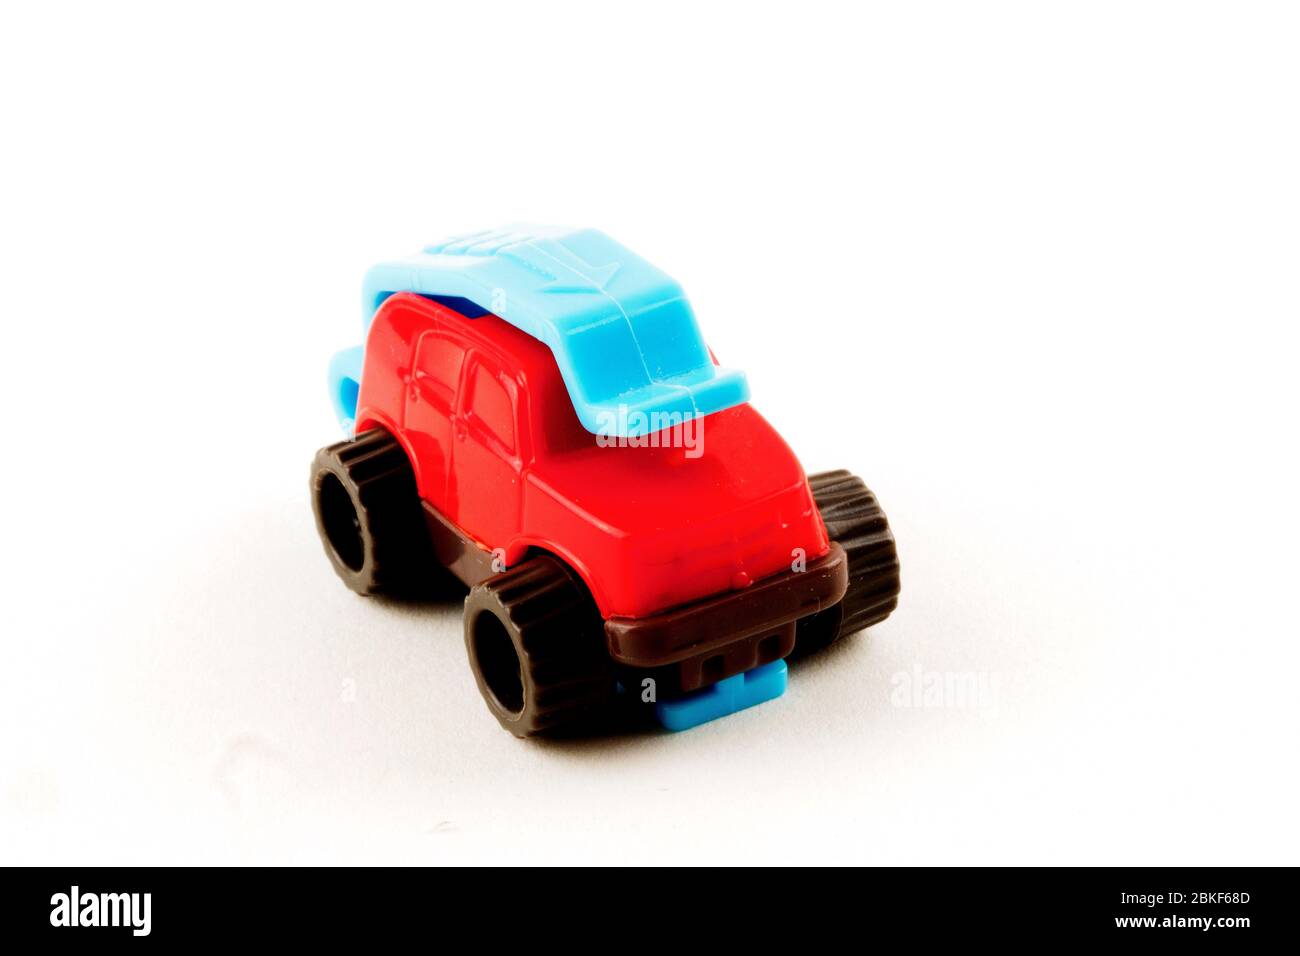 Matchbox juguete plástico para camiones aislado en fondo blanco Foto de stock